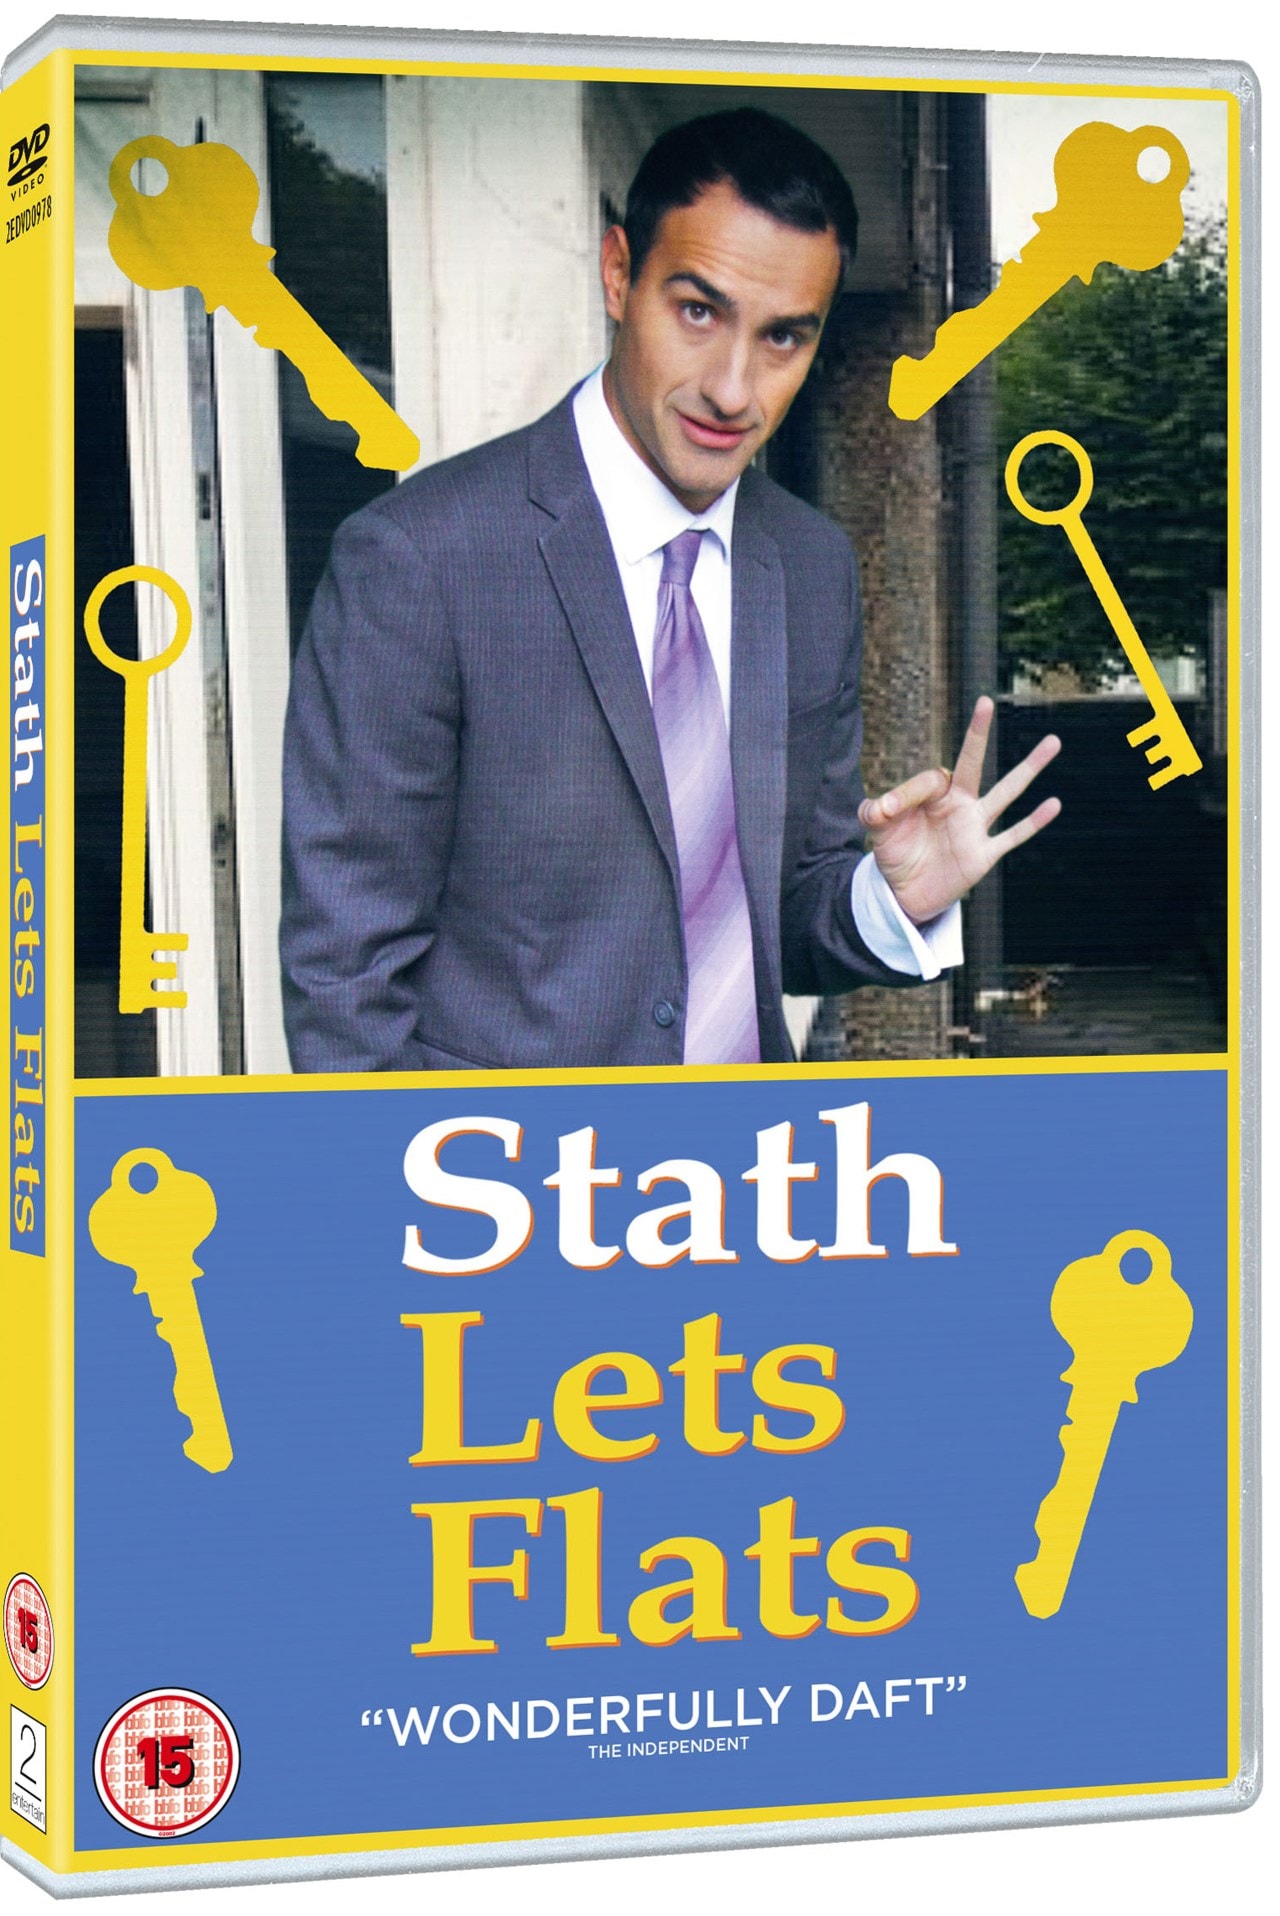 stath lets flats subtitle